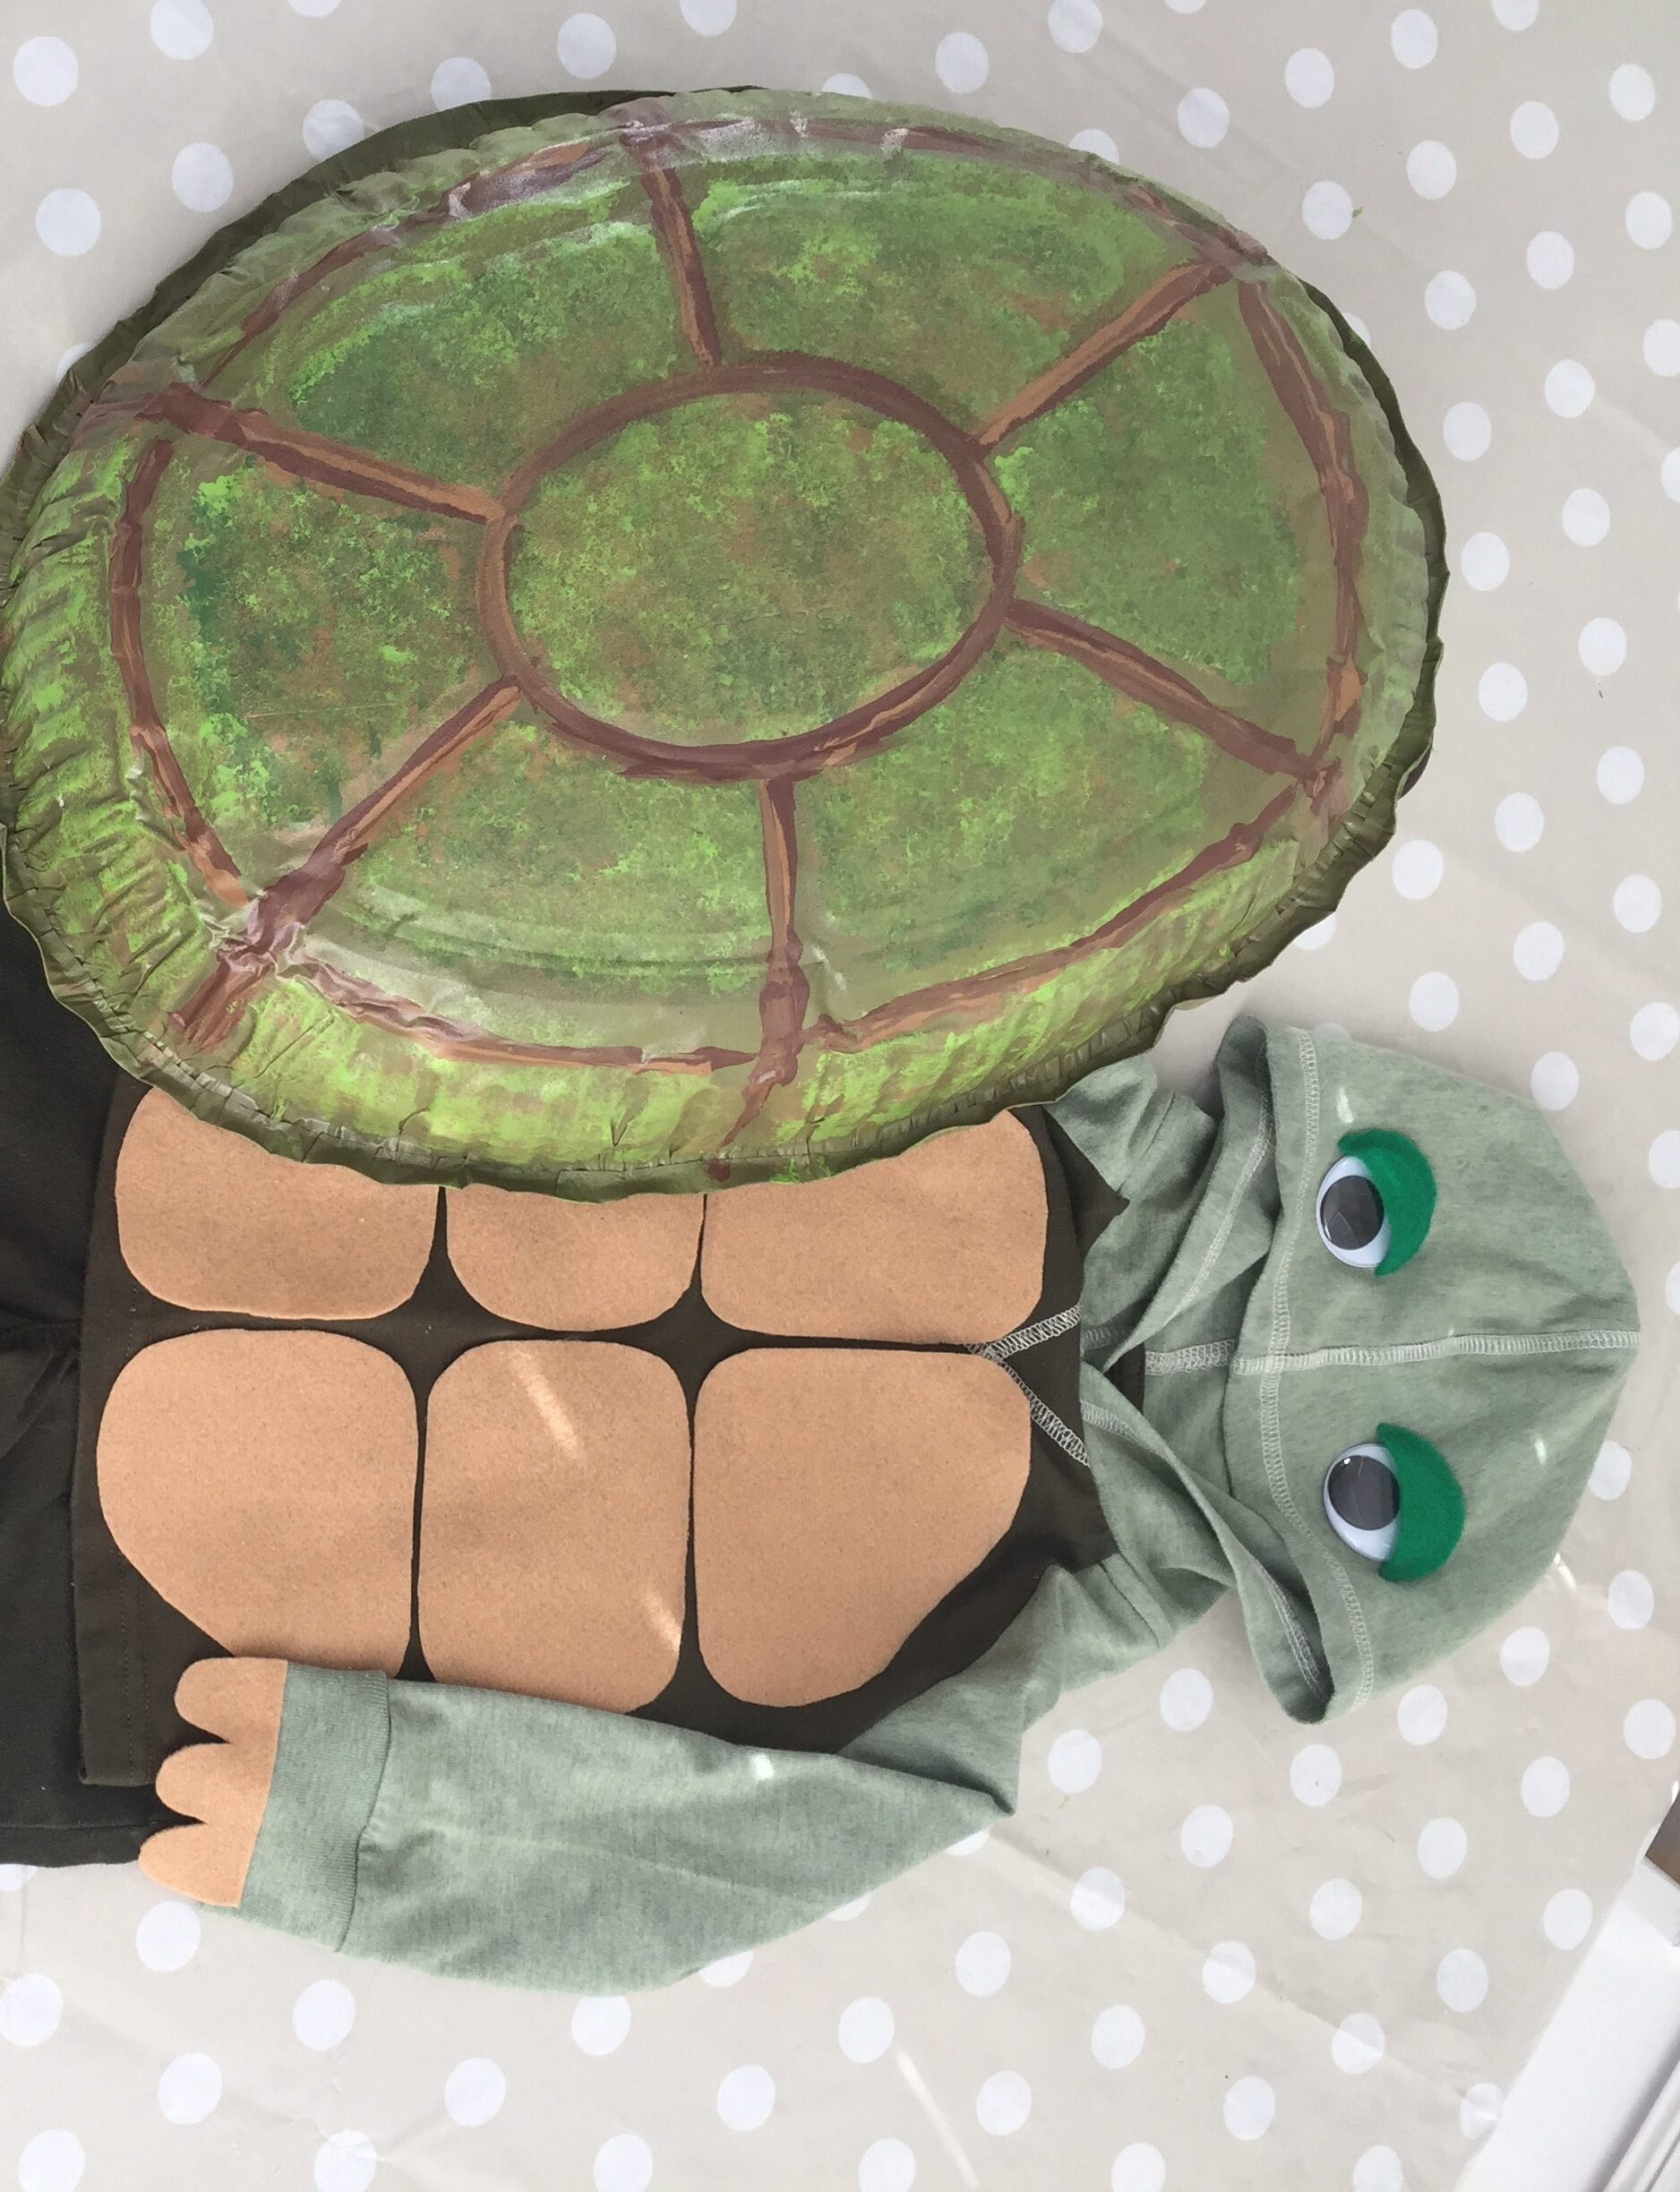 Disfraz infantil DIY de Halloween: La tortuga